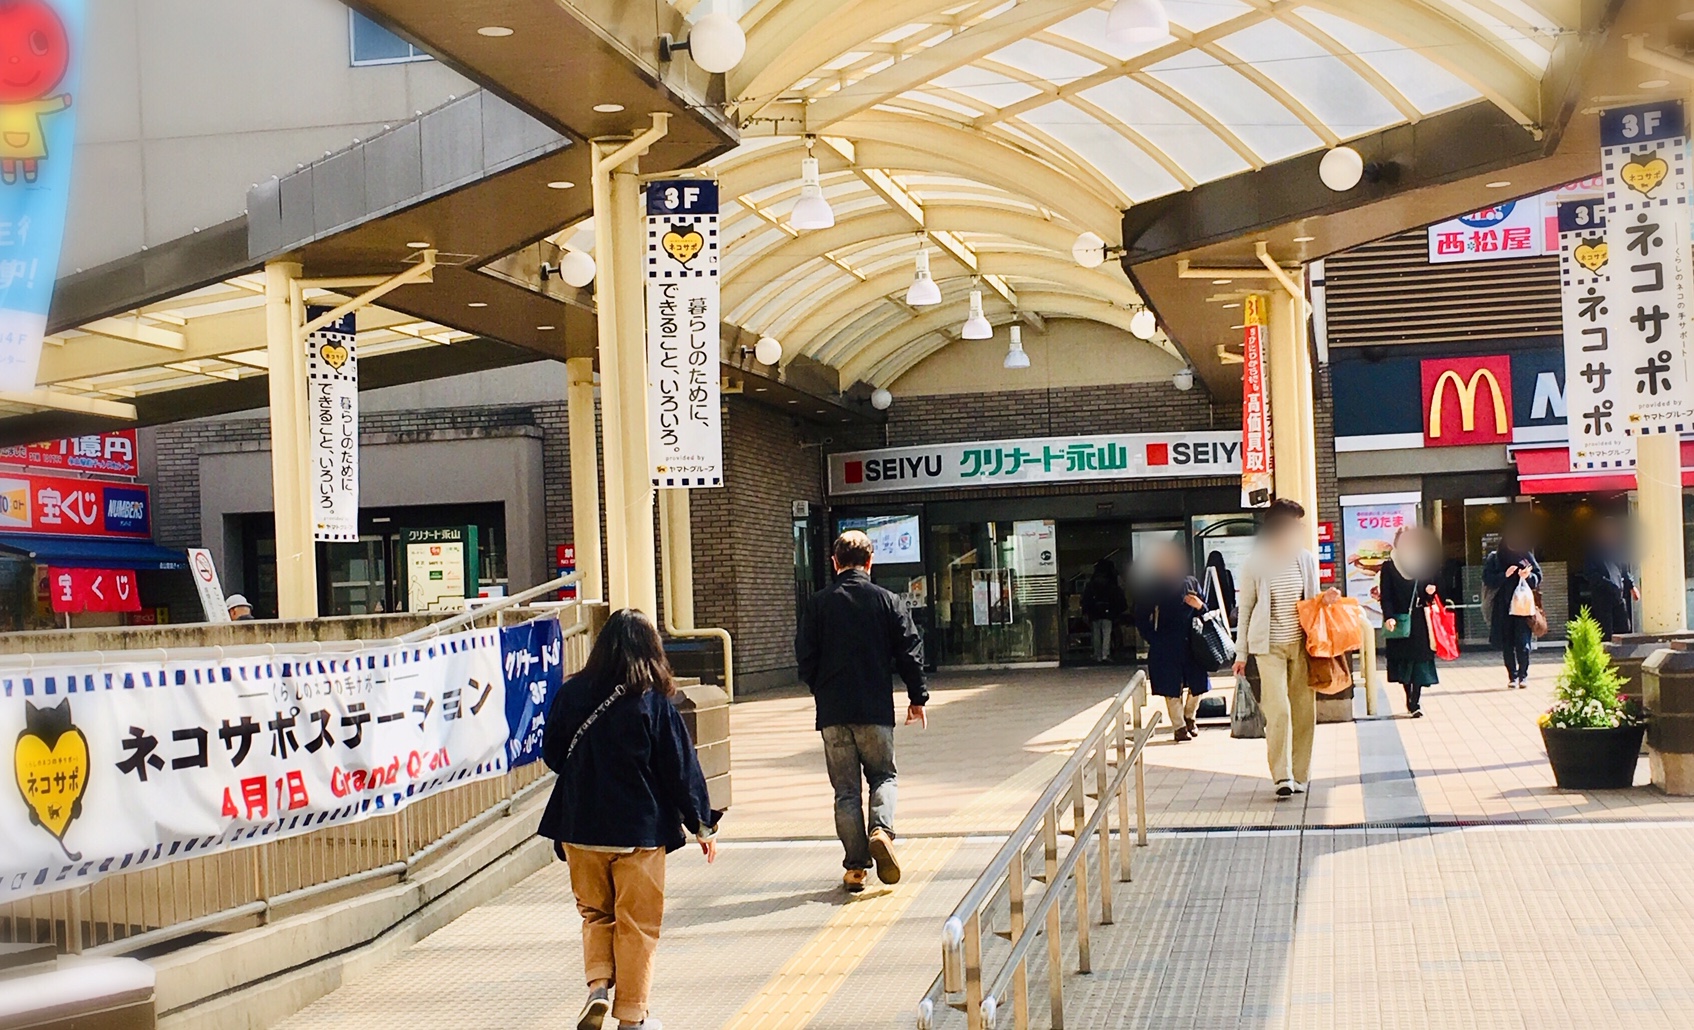 小田急永山駅、京王永山駅下車すぐのグリナード永山のエントランスがネコサポの垂れ幕で彩られてます